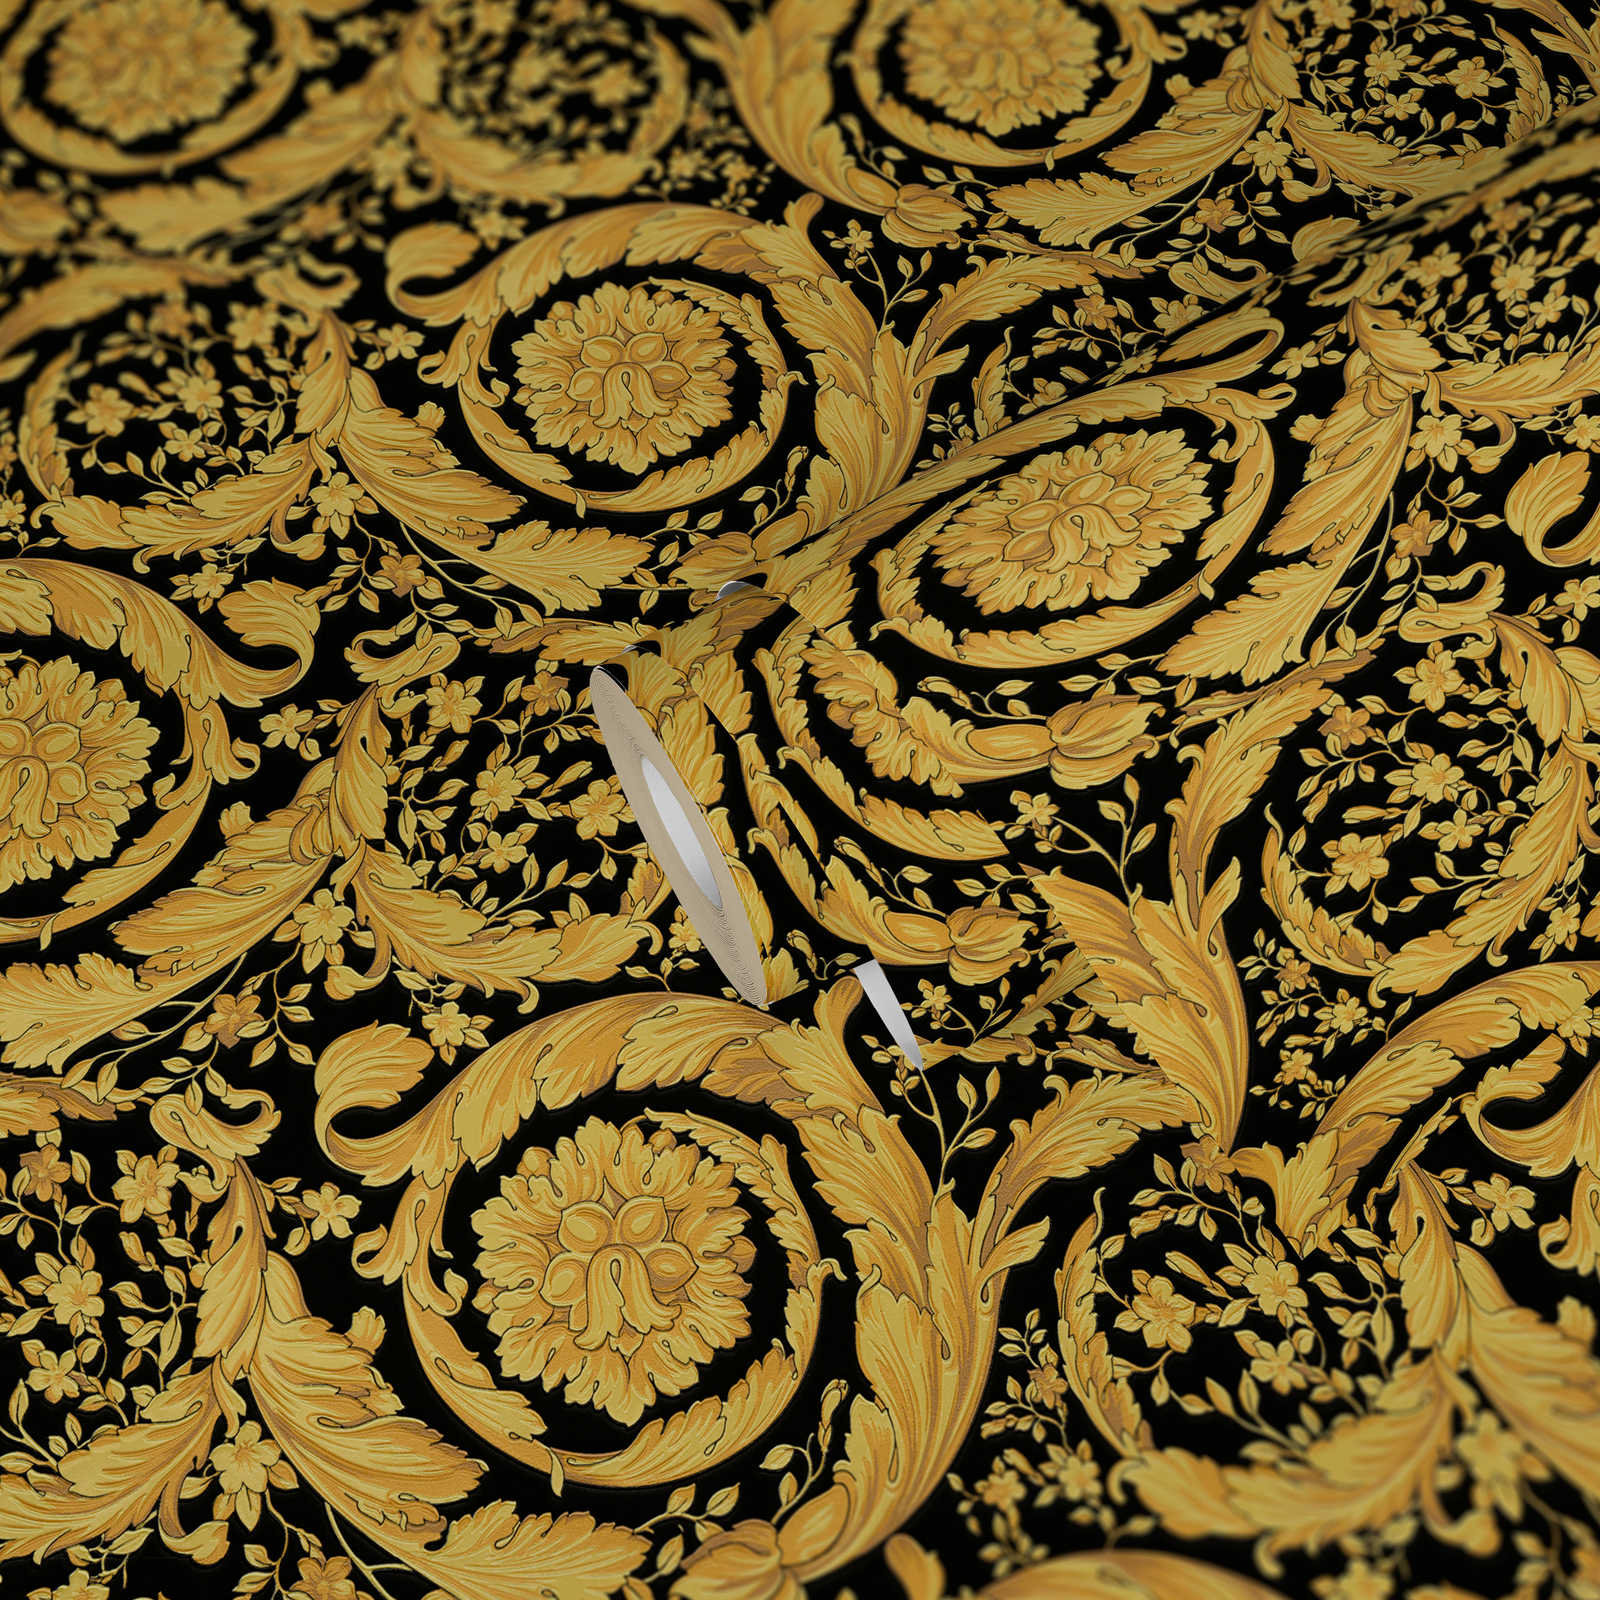             VERSACE behang met sierlijk bloemenpatroon - goud, zwart
        